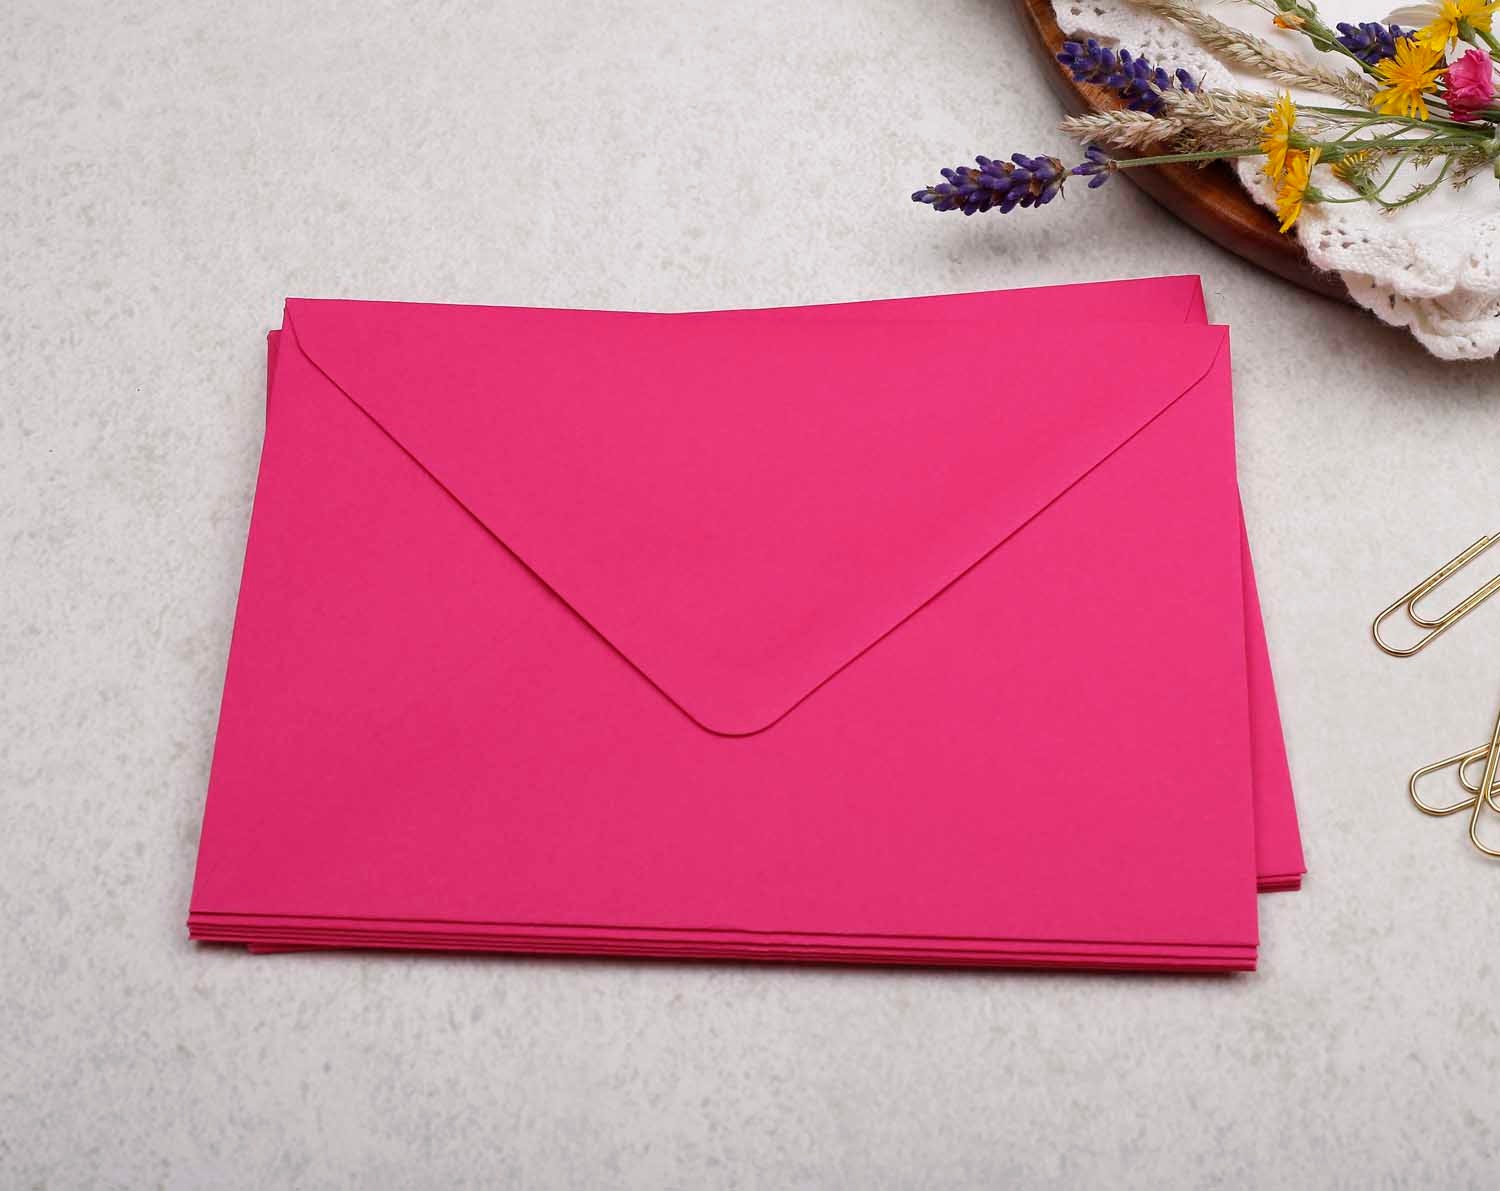 125 x 175mm Hot Pink Envelopes